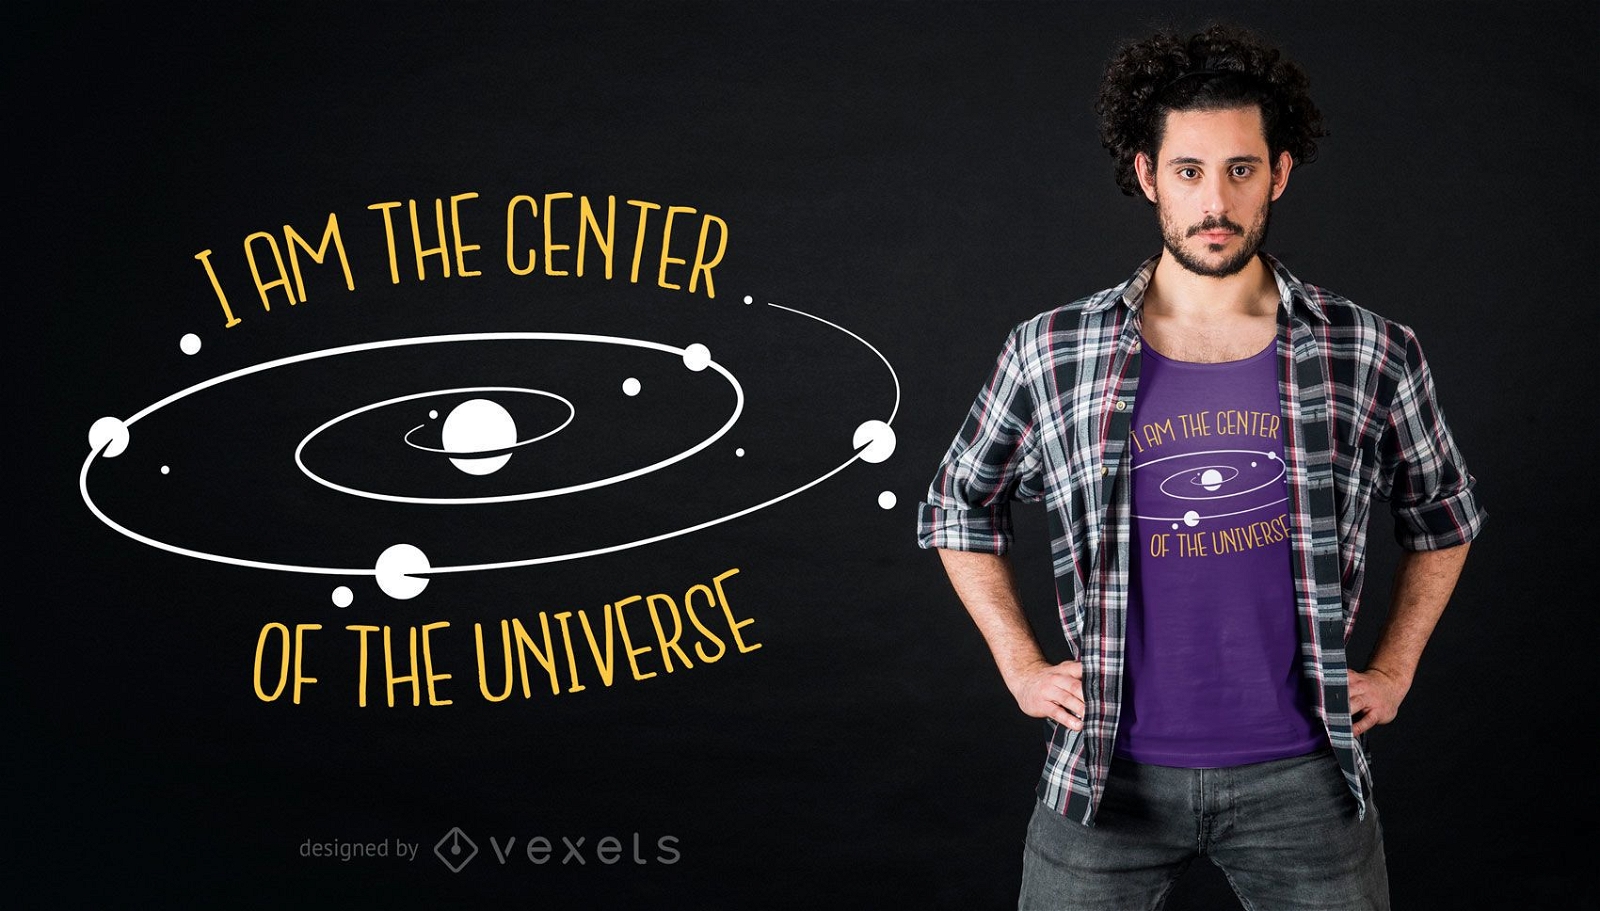 Dise?o de camiseta del centro del universo.